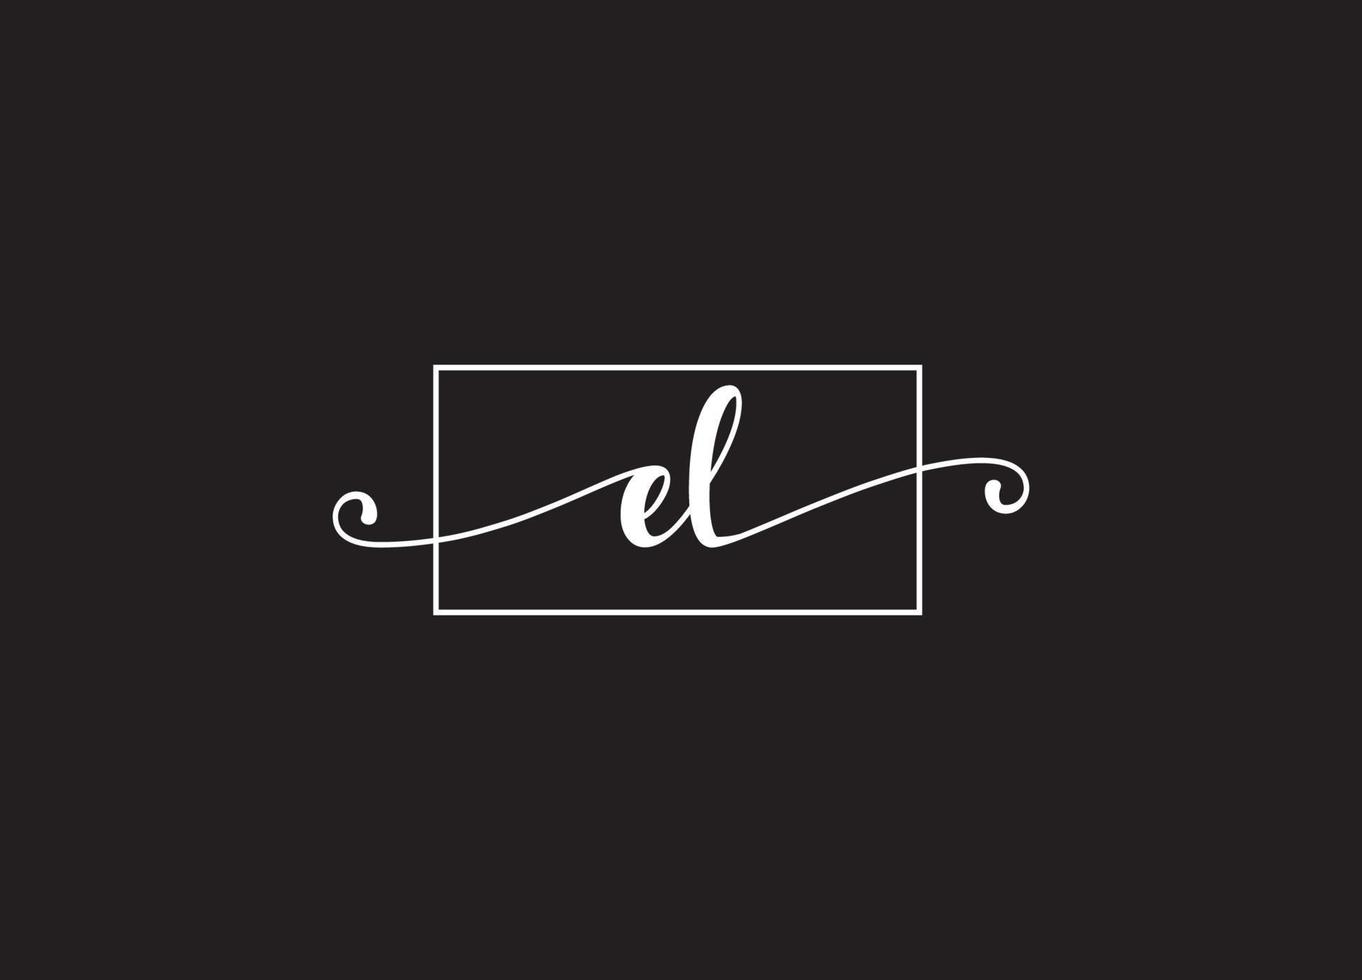 EL logo design and company logo vector